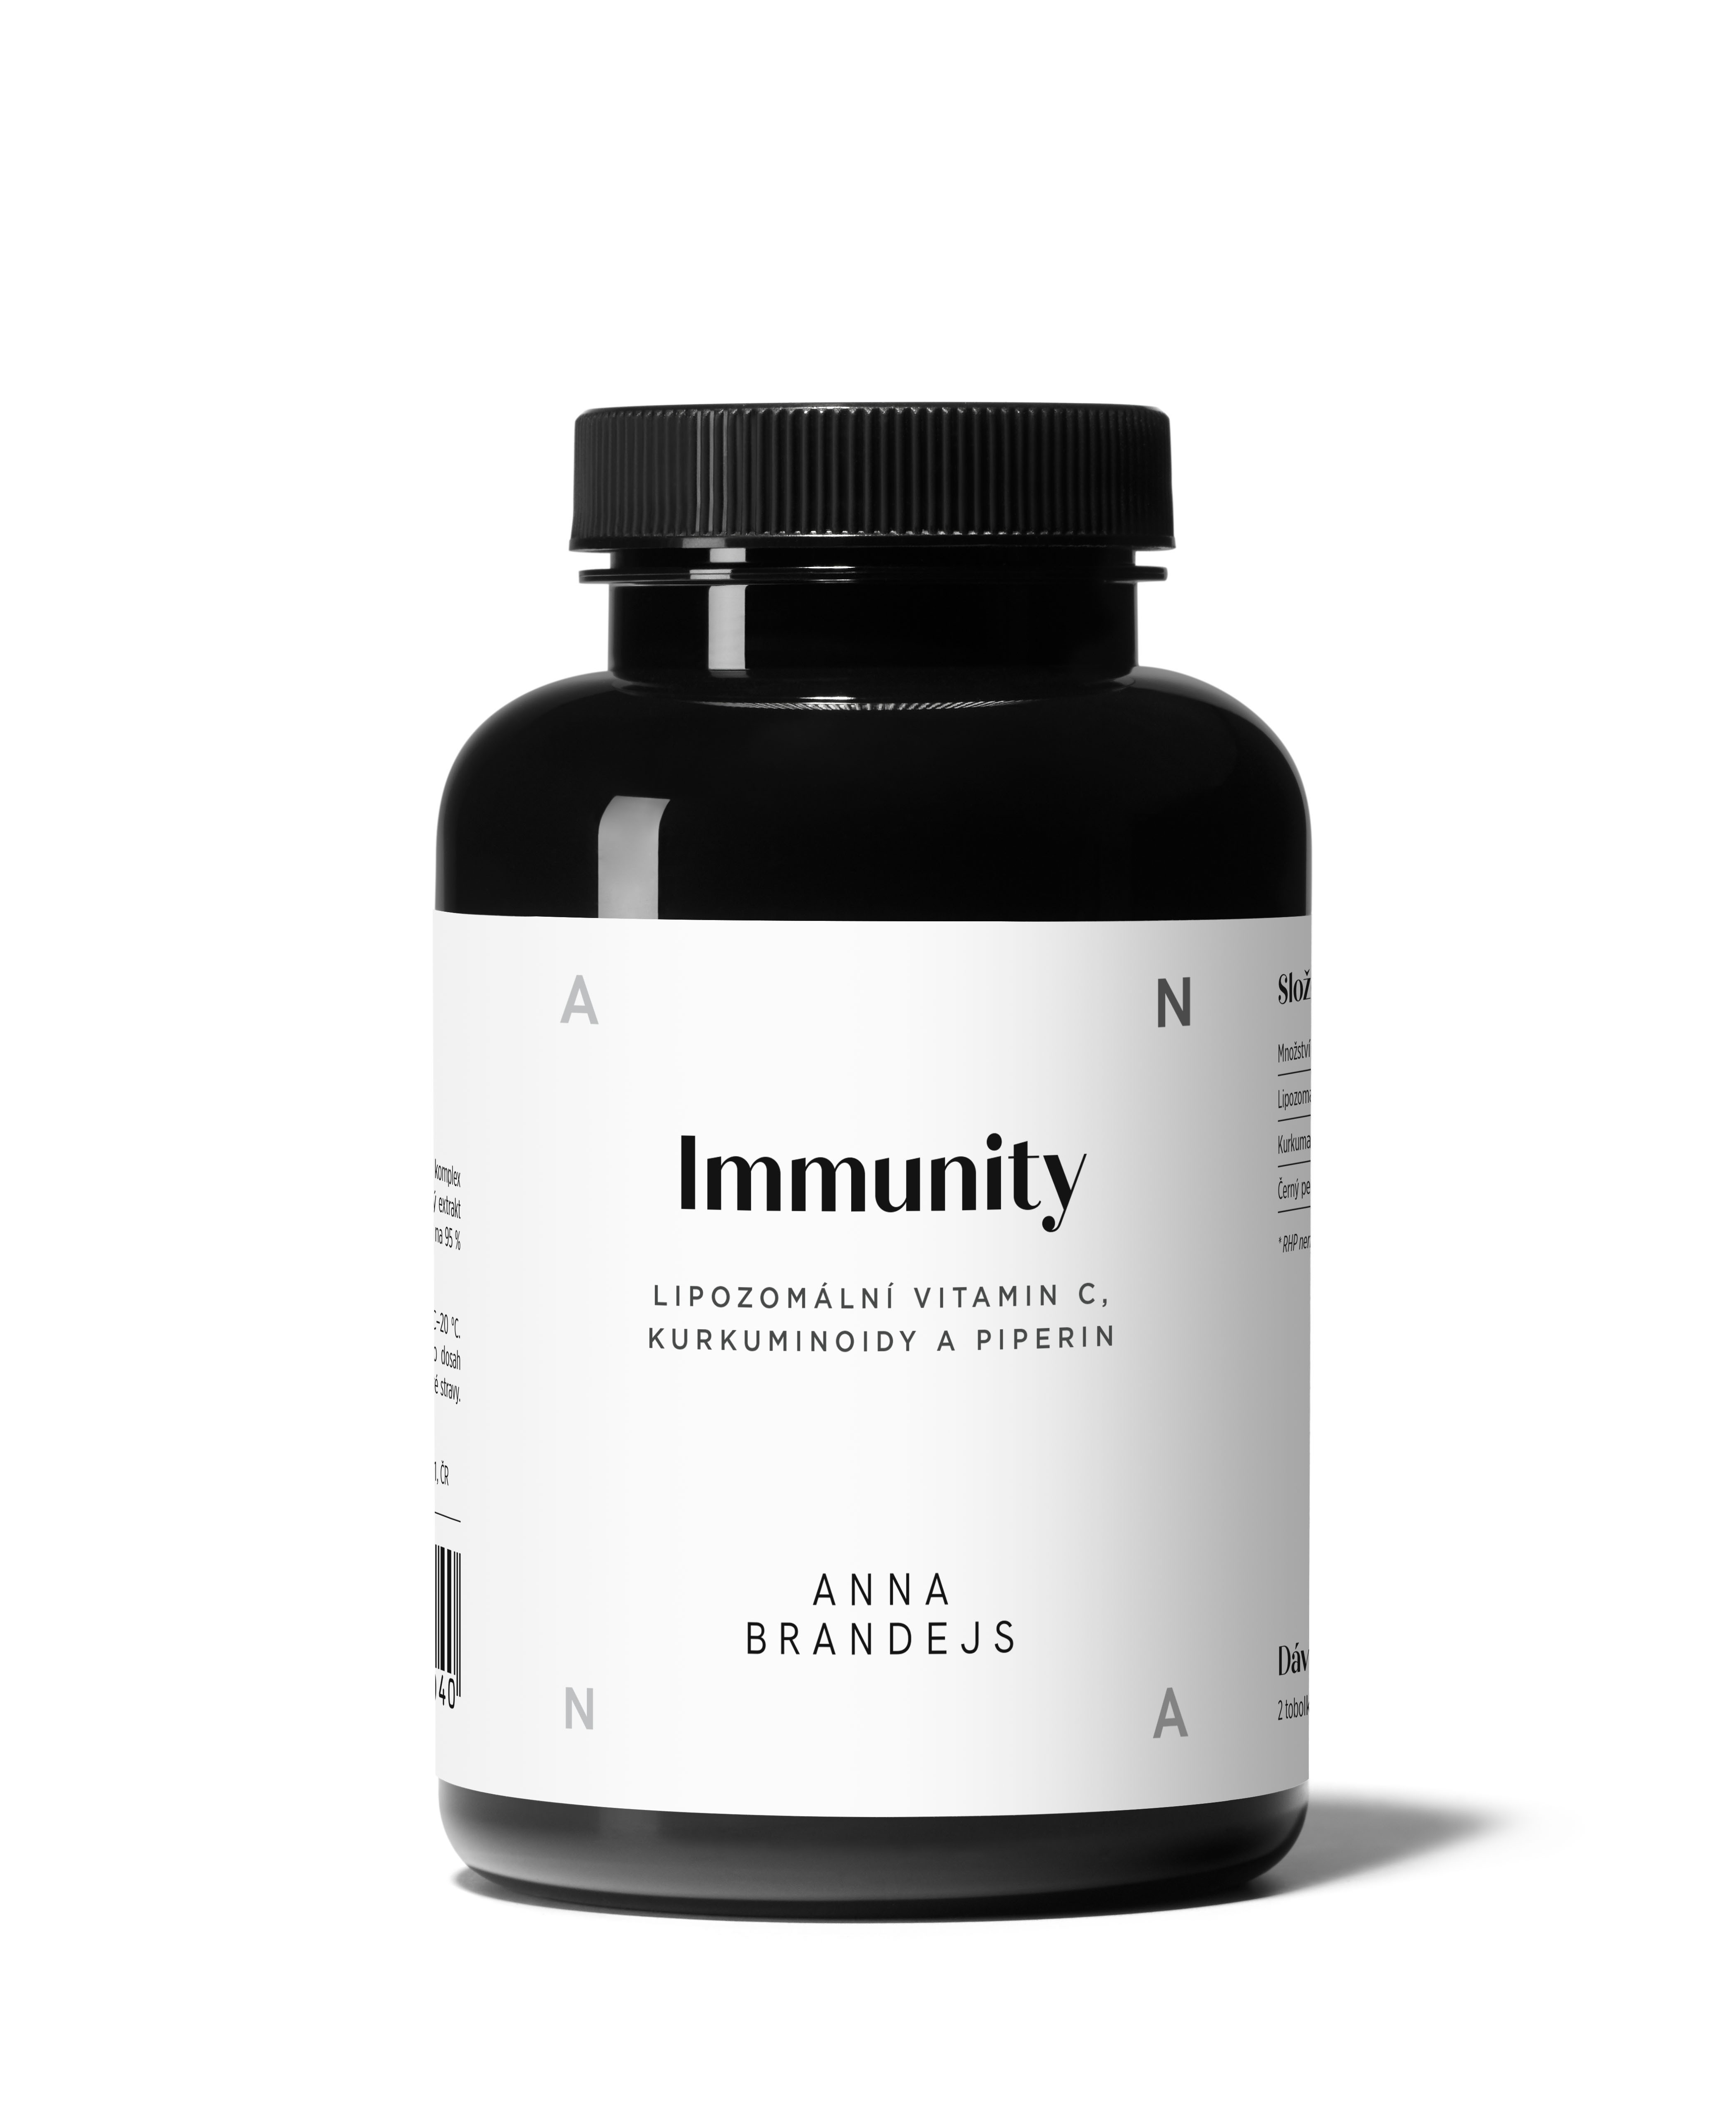 Immunity by ANNA BRANDEJS